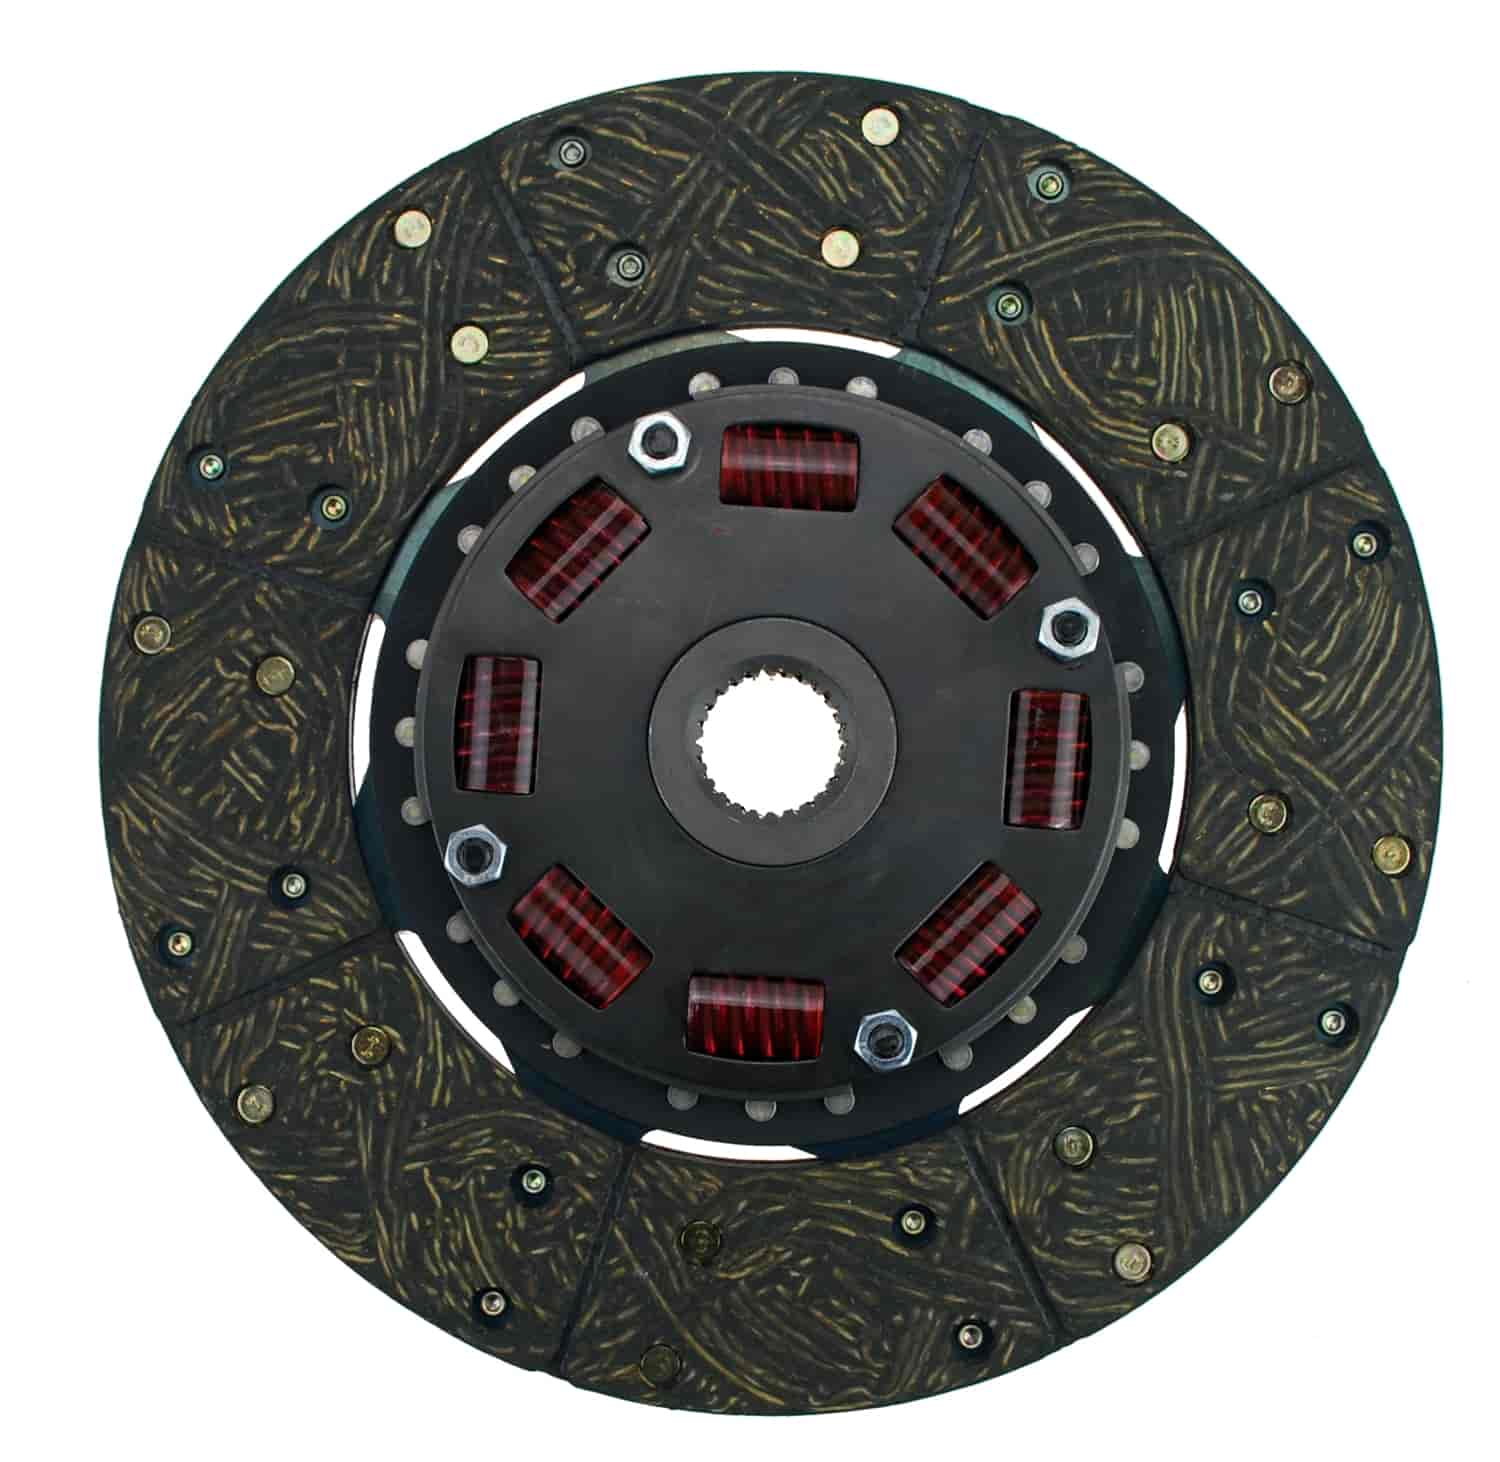 300 Series Sprung Center Clutch Disc 10-1/2